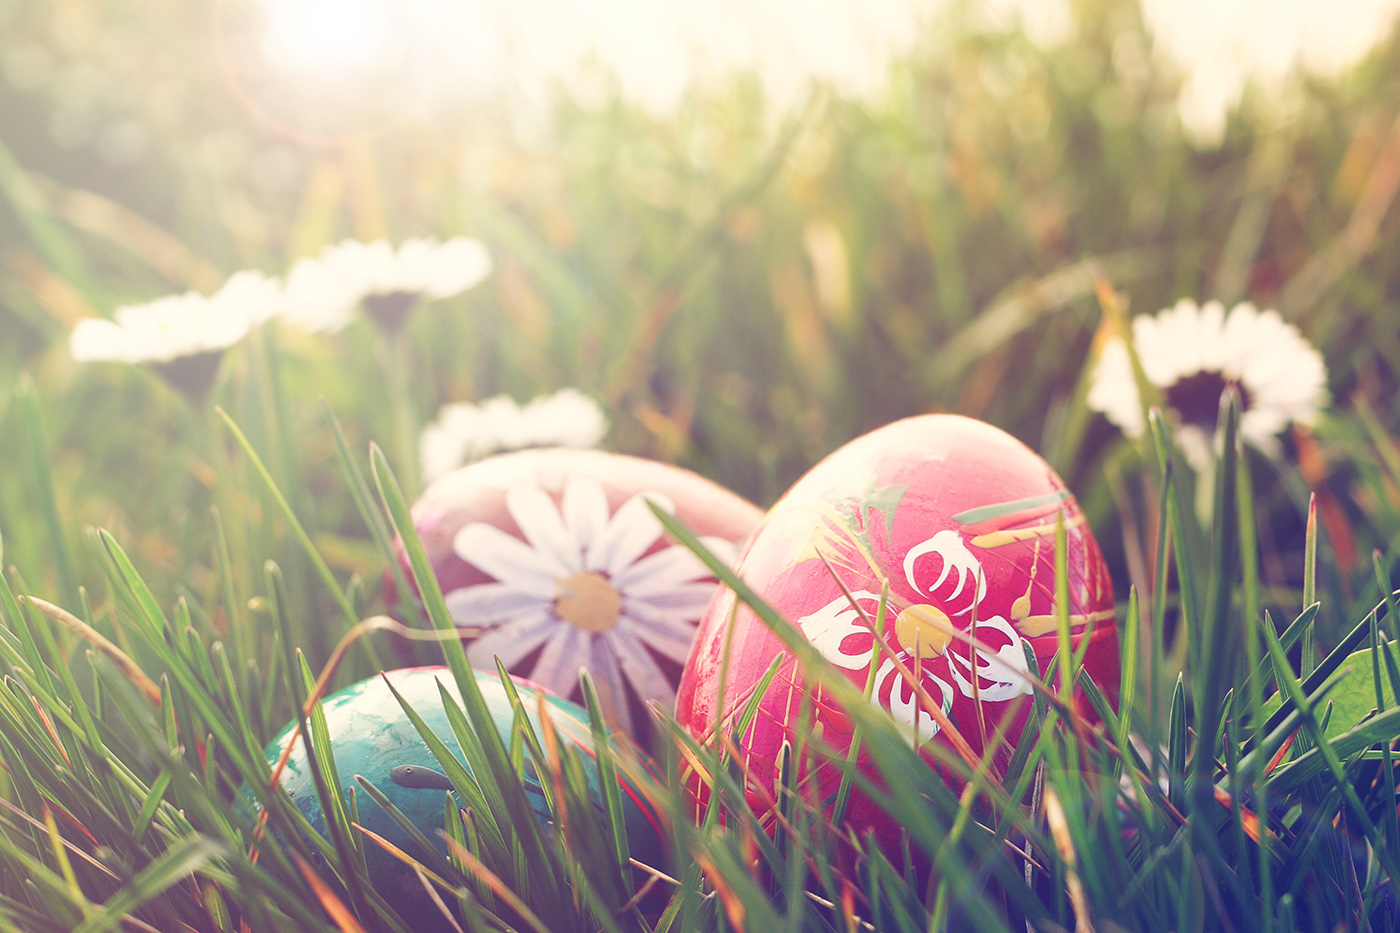 23rd Annual Easter Egg Hunt & Spring Fling